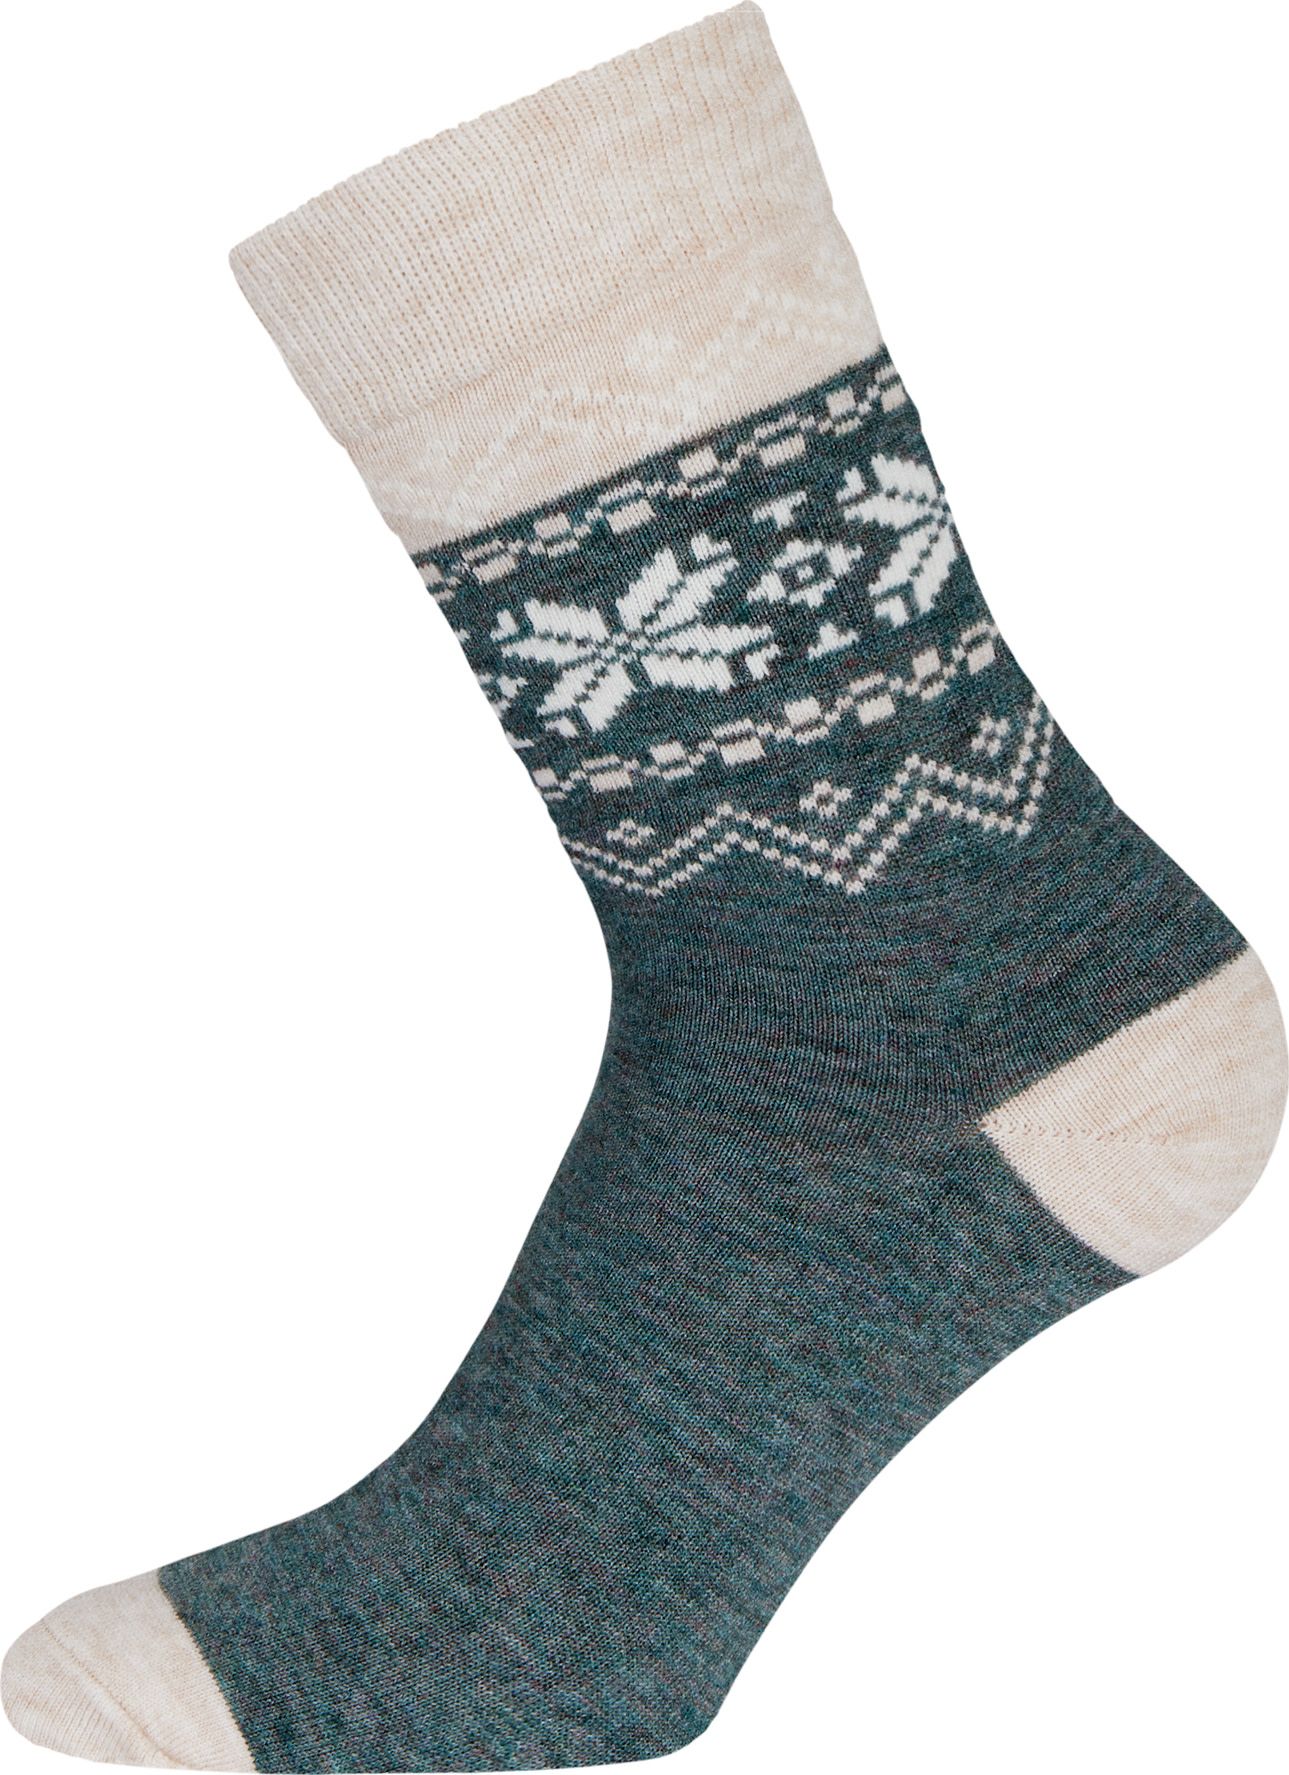 Heritage Merino Socks Green Bay